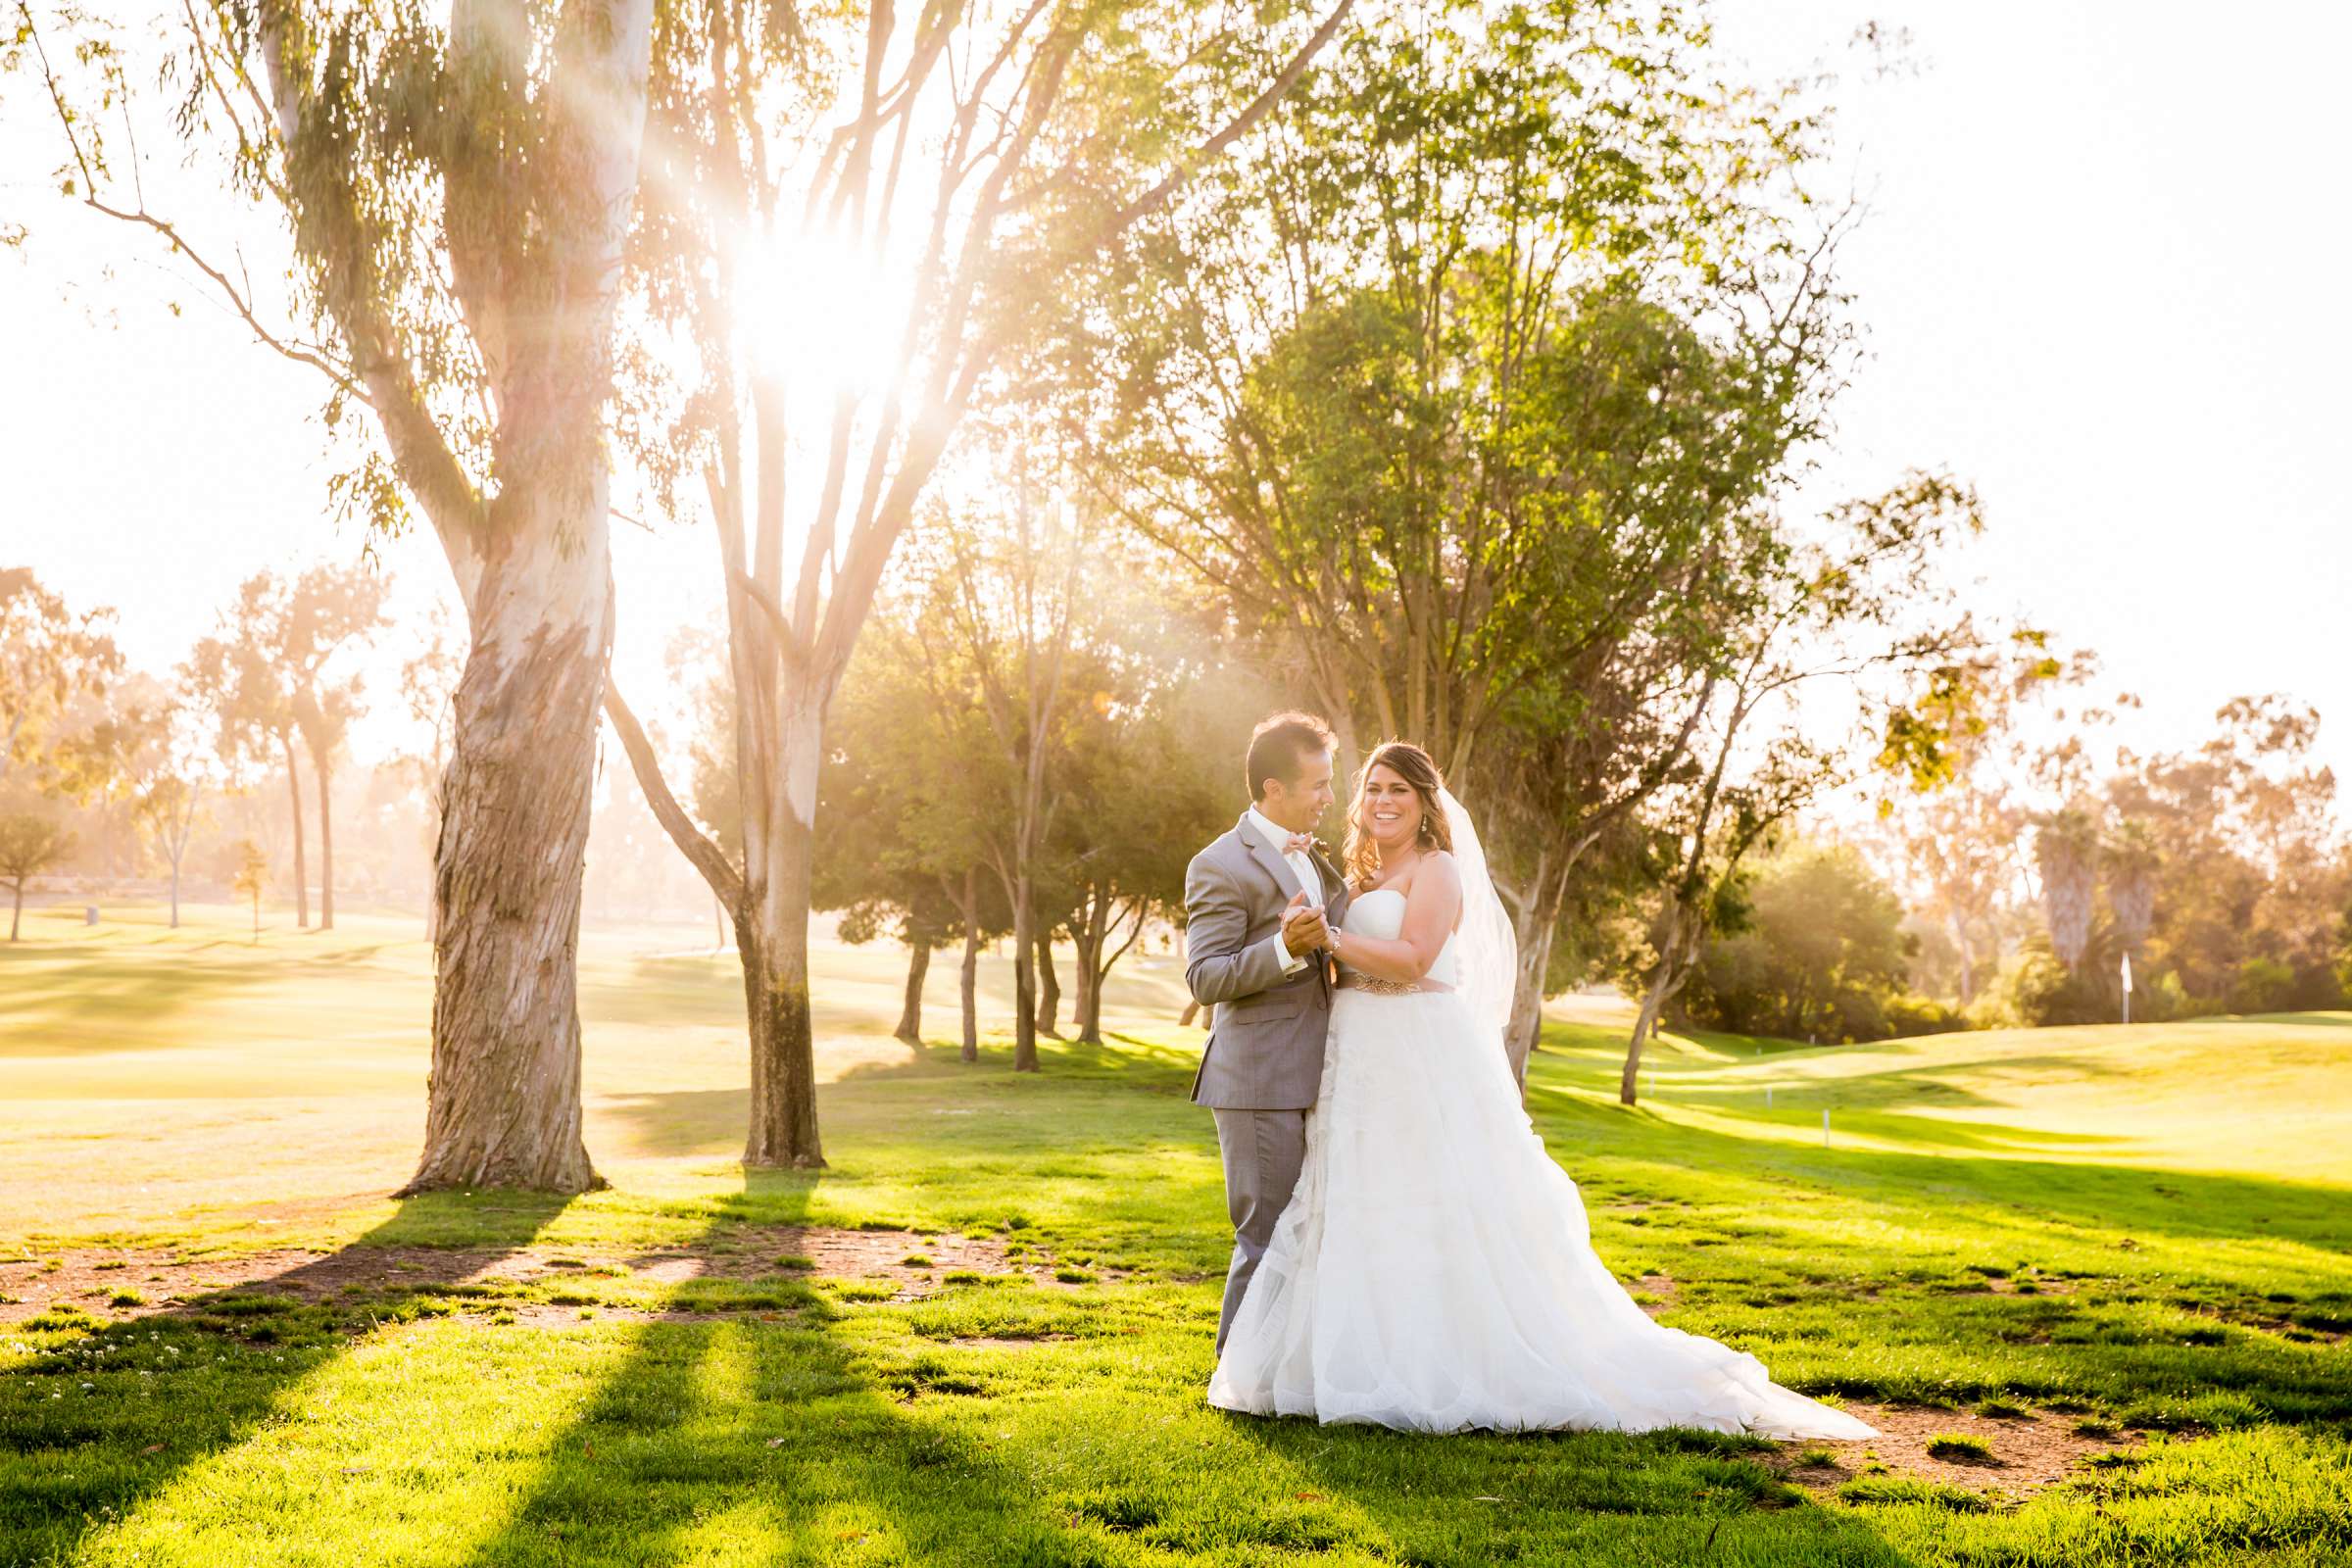 Rancho Santa Fe Golf Club Wedding coordinated by Monarch Weddings, Carolynn and Jon Wedding Photo #30 by True Photography